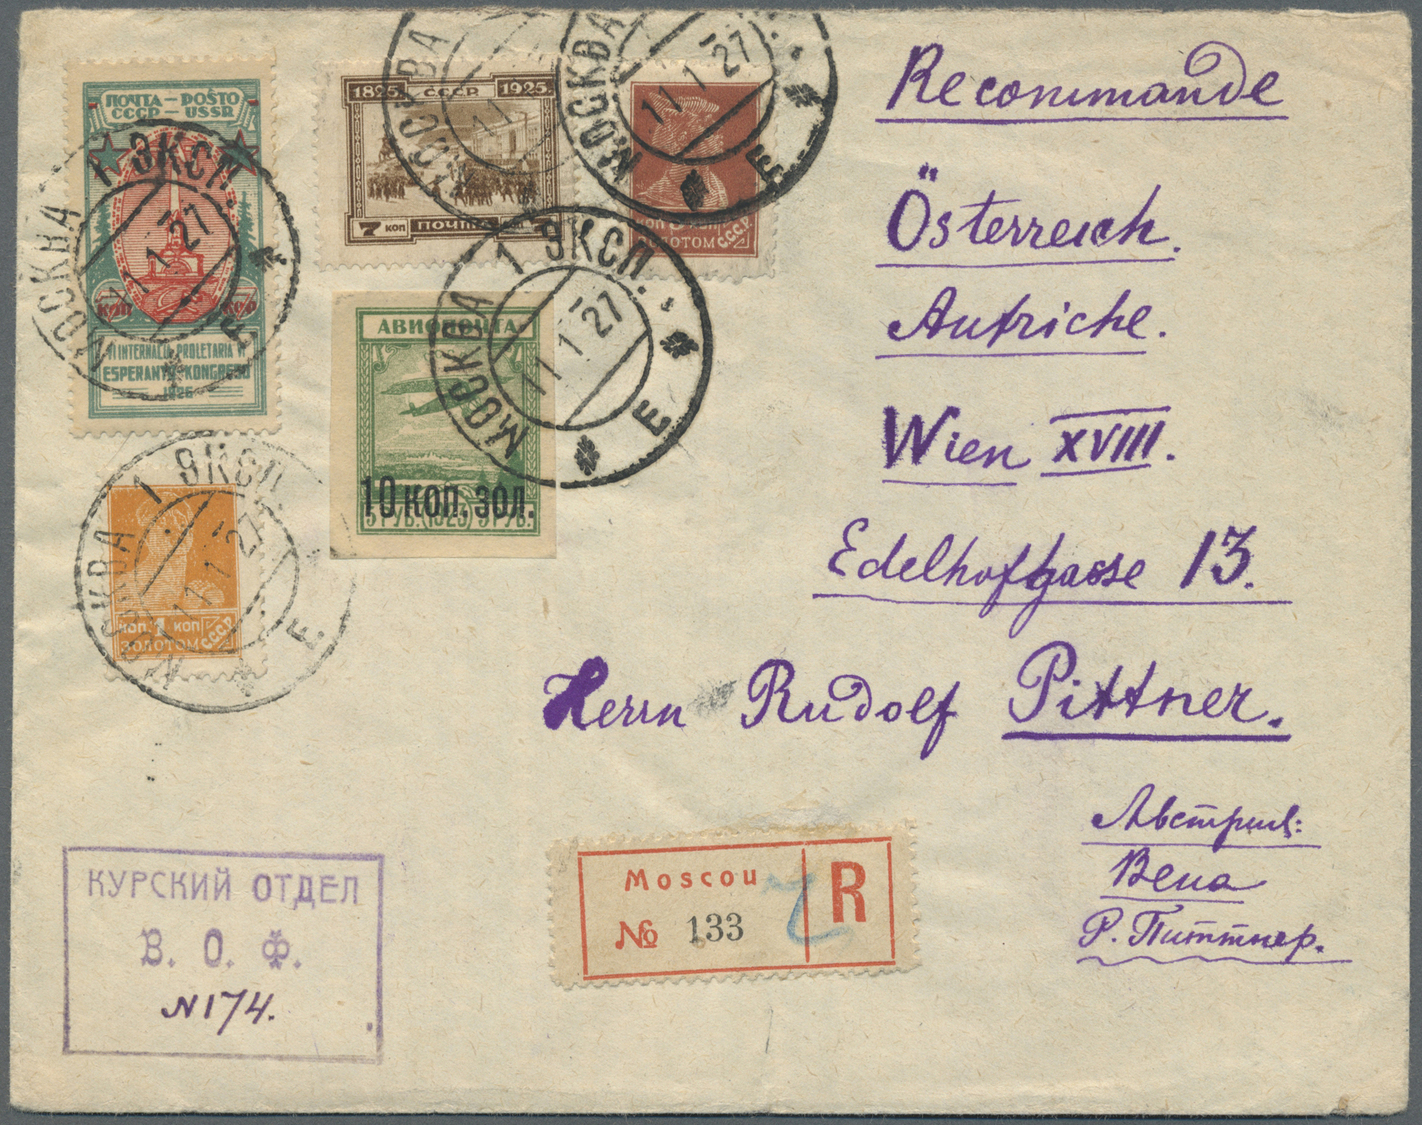 Br Sowjetunion: 1924, Nicht Ausgegebene Flugpostmarke 10 Kop Mit Schmaler "0" Aufdruck In Goldwährung Und Zusatzf - Lettres & Documents